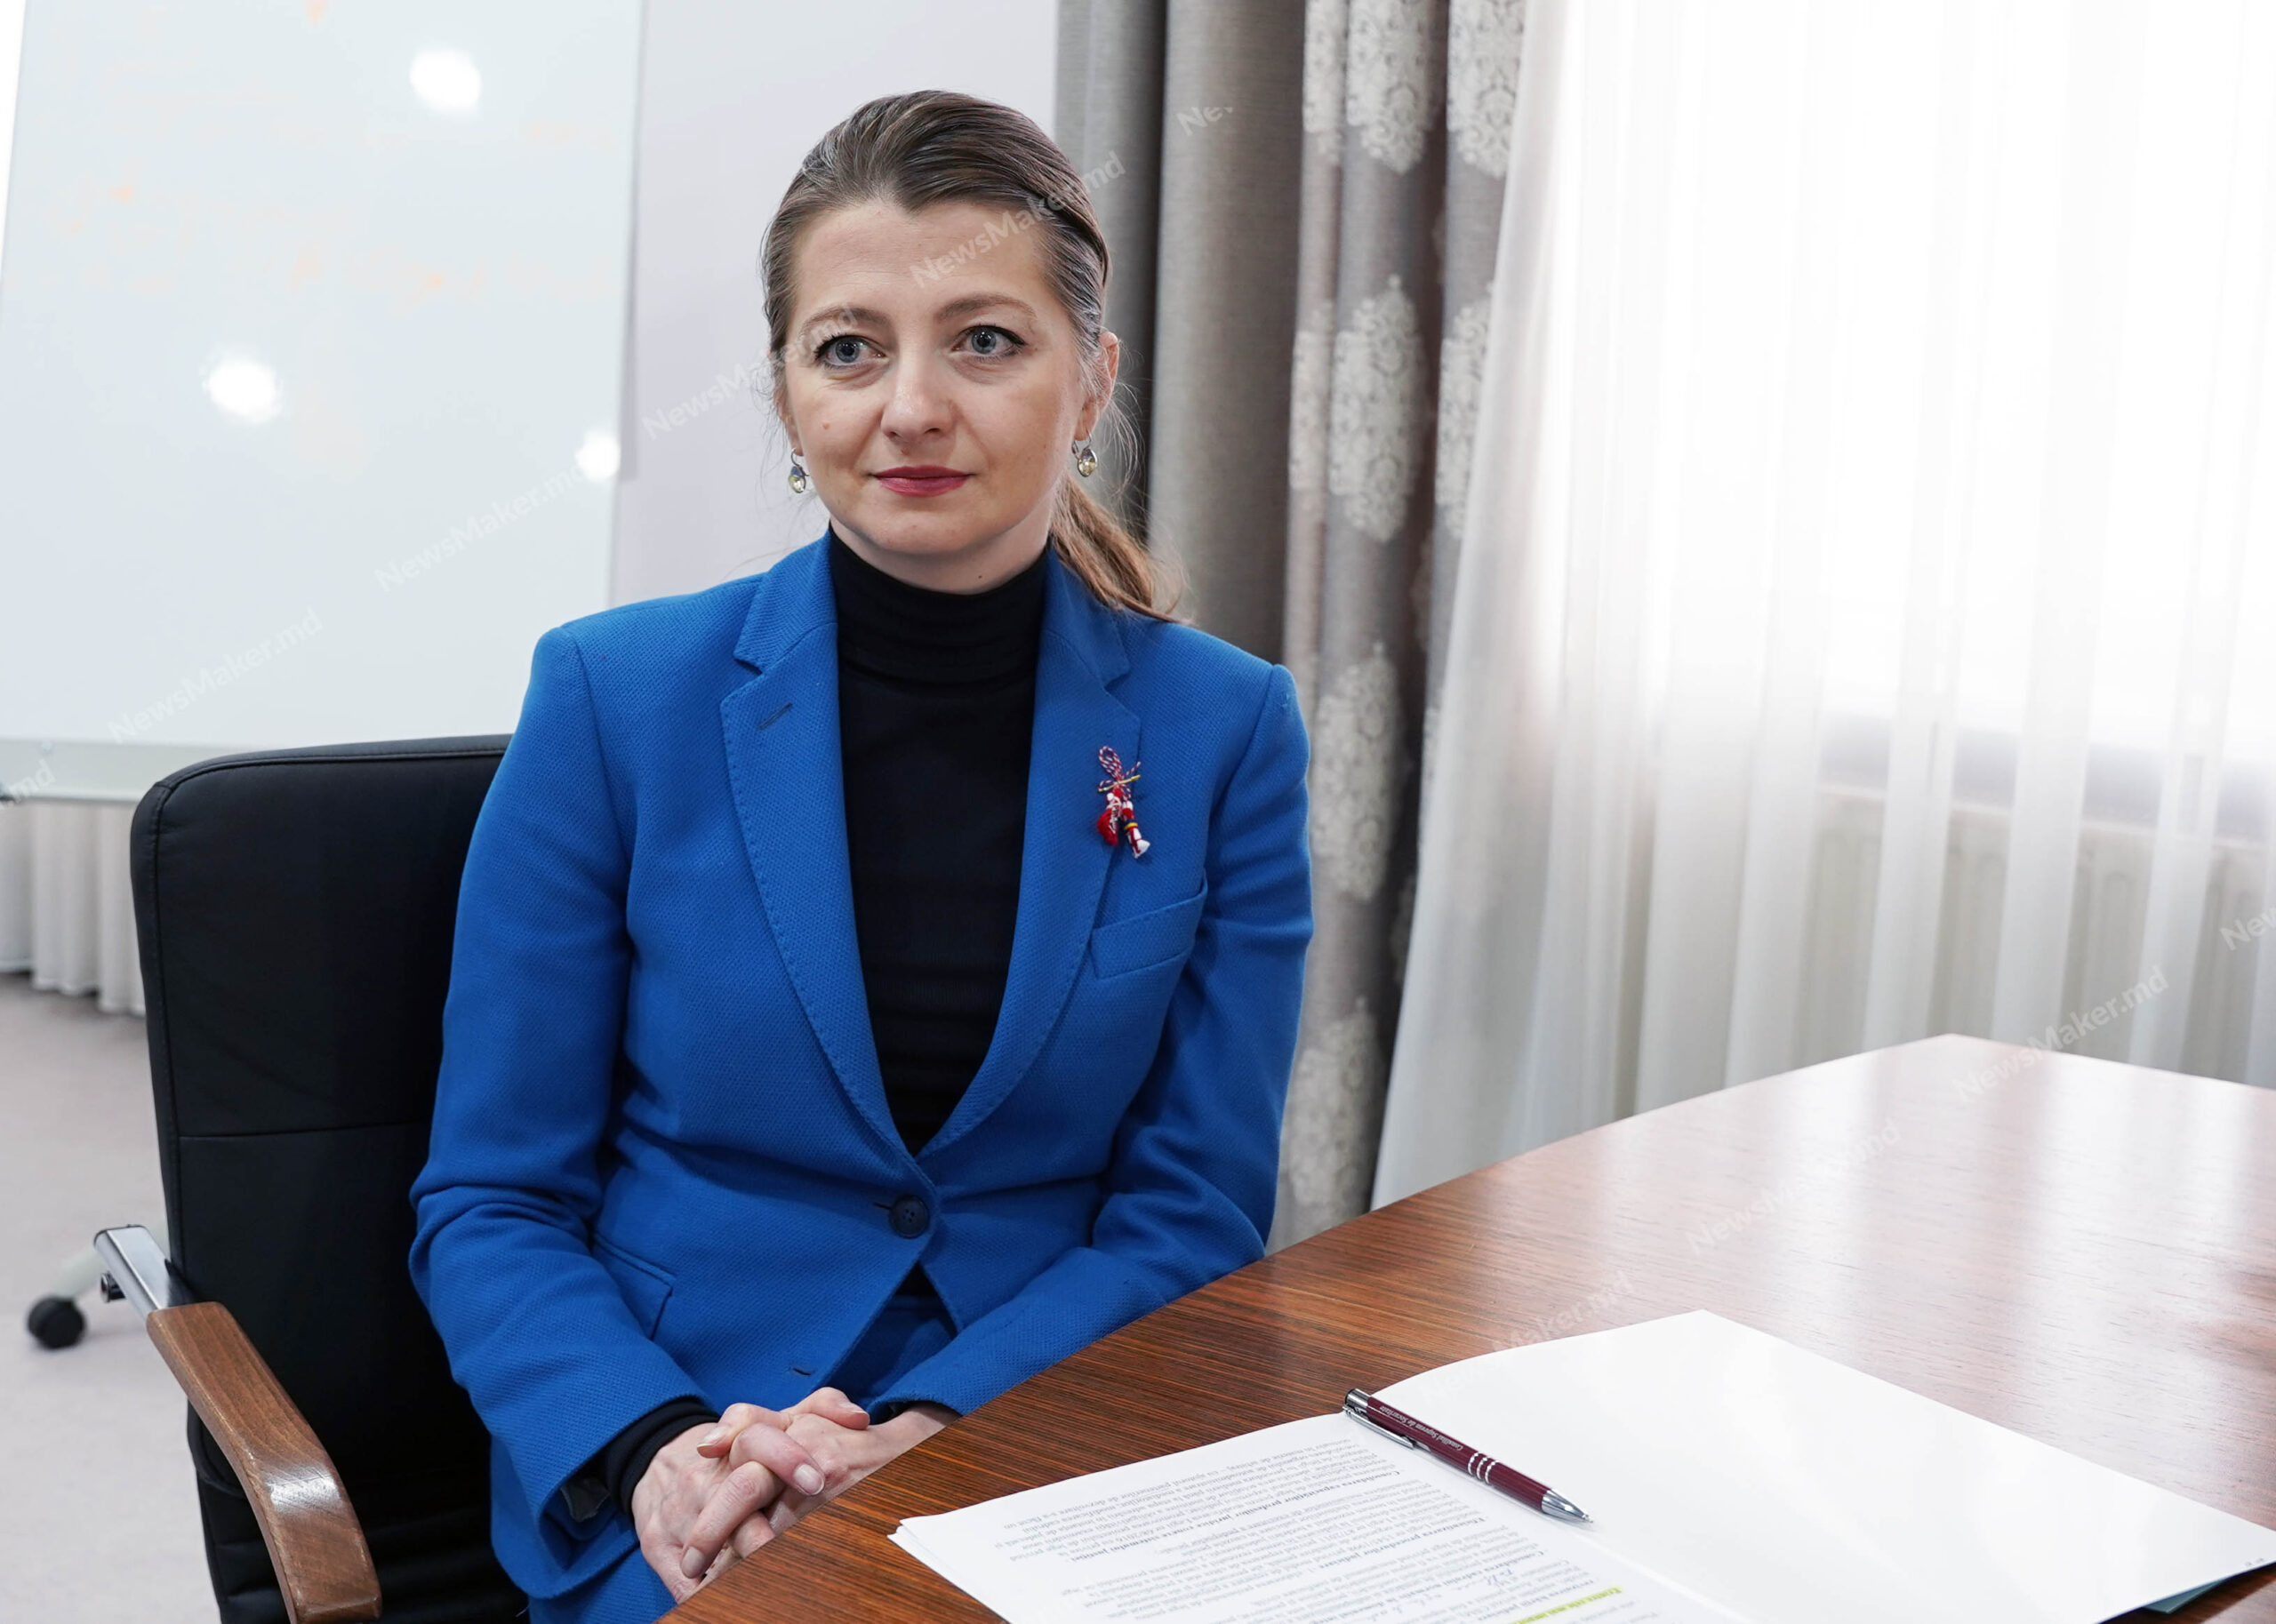 Молдова останется без судей и прокуроров? Министр юстиции – о Vetting-е, «грязных» деньгах, деле «Шор» и оправдании Стояногло. Интервью NM